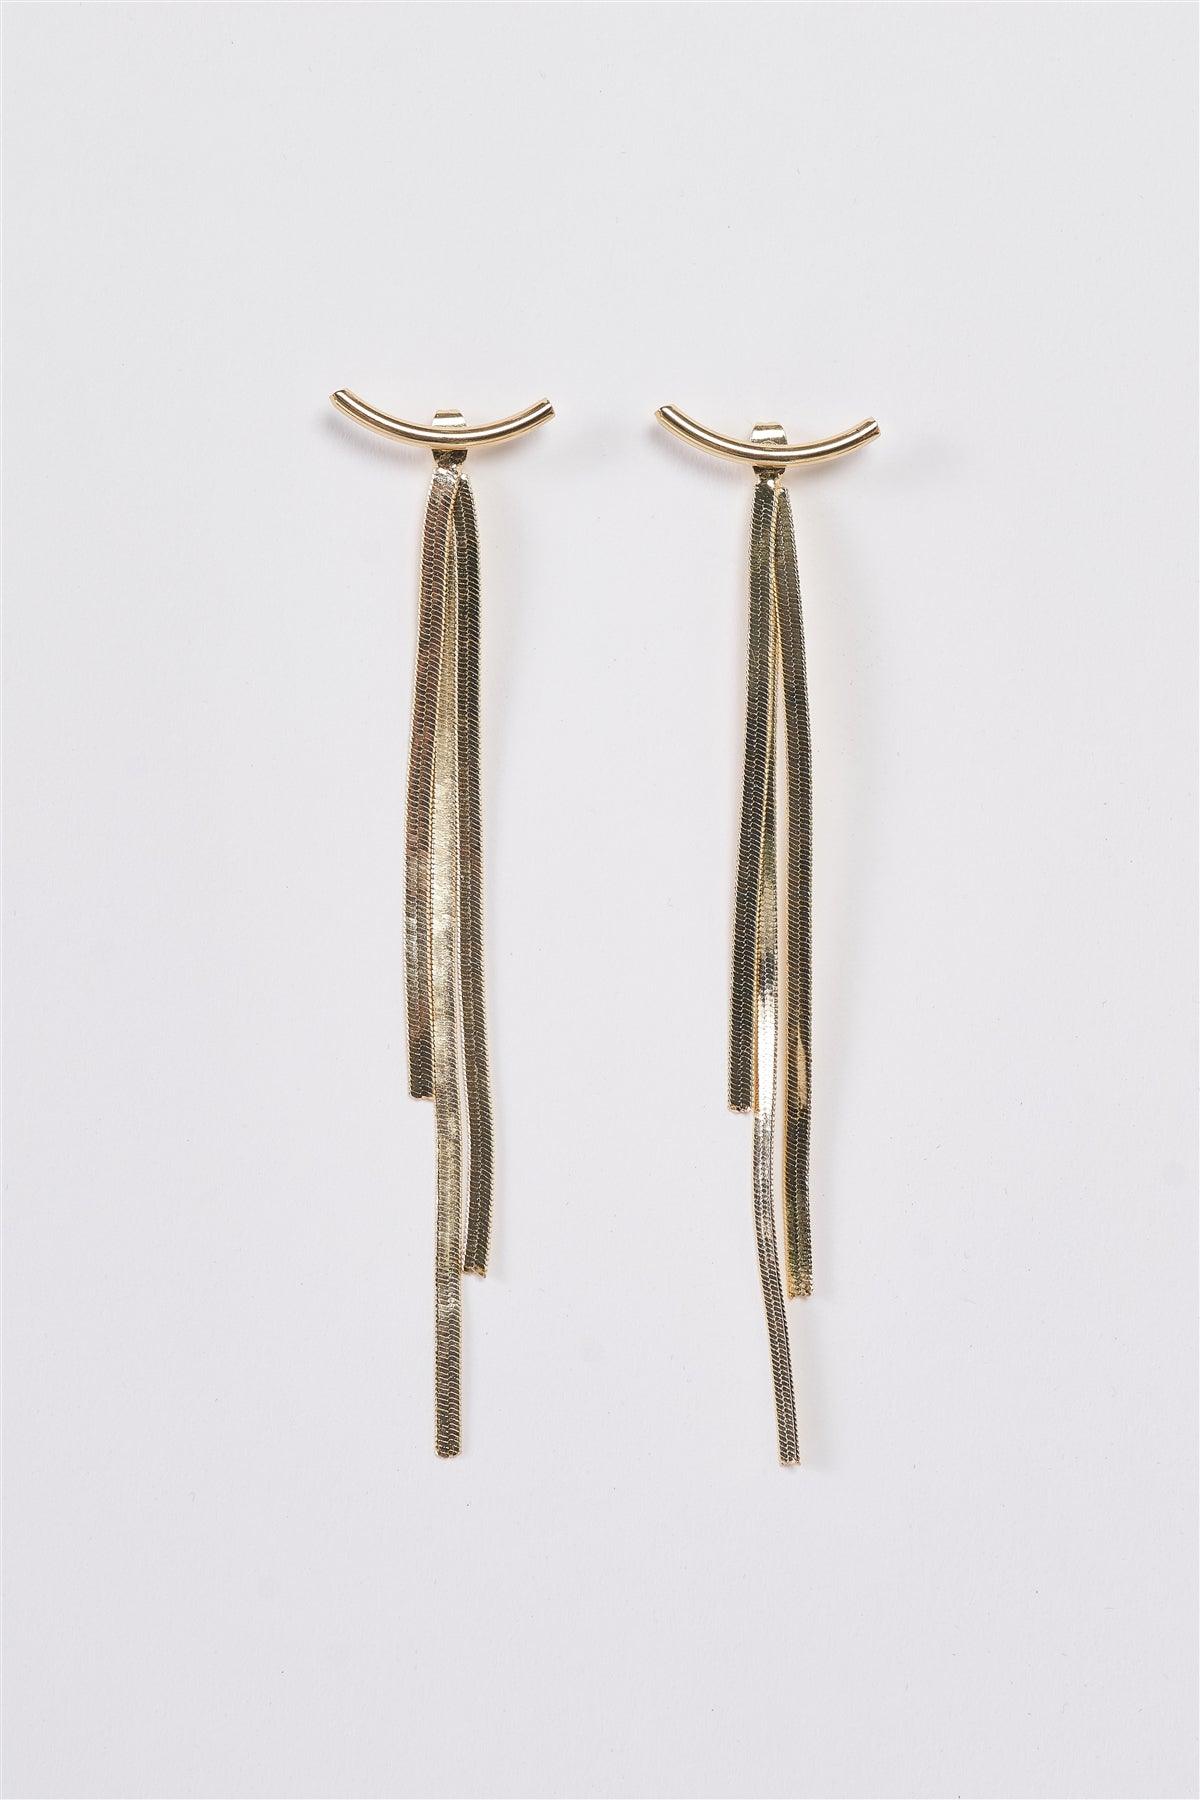 Gold Geometric Long Tassel Snake Chain Ear Jackets Bar Drop Earrings /3 Pairs